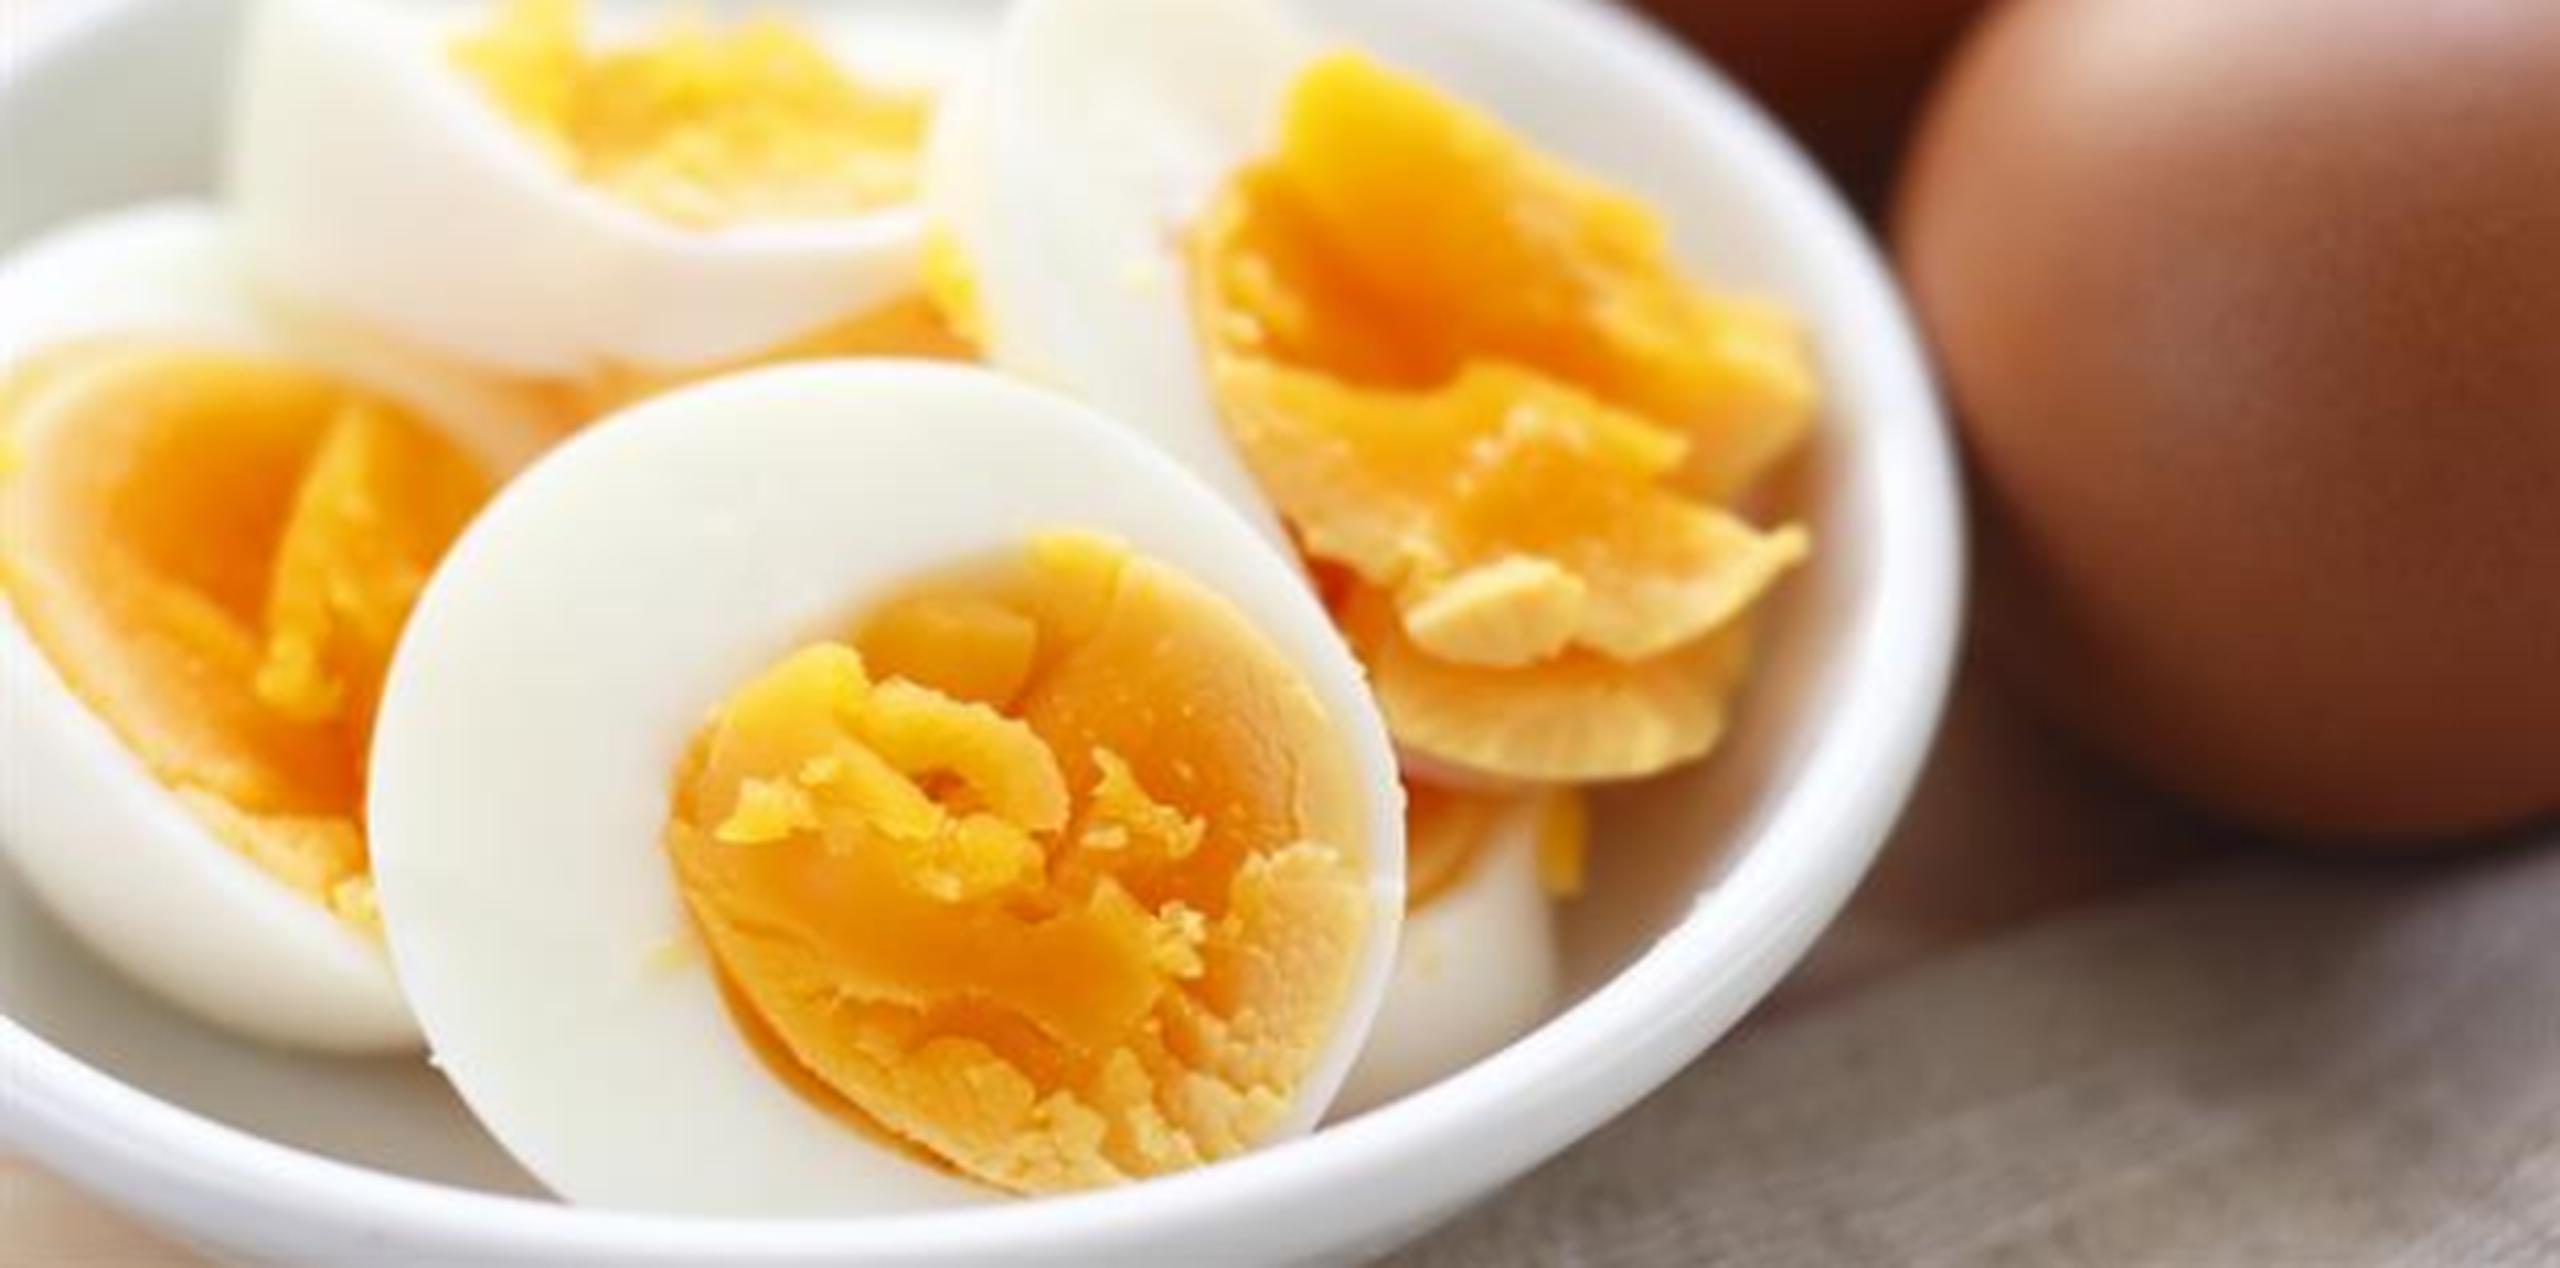 El huevo se destaca por su riqueza en ciertos antioxidantes (luteína y zeaxantina) que protegen la visión y retrasan la degeneración macular. (Shutterstock)